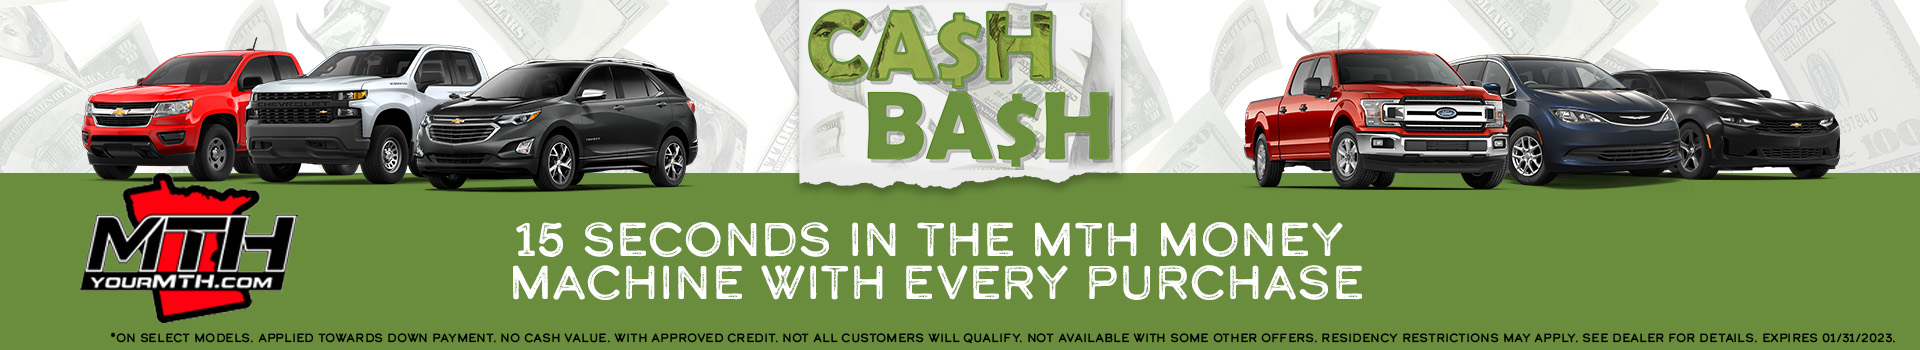 MTH-CashBash-Banner-1920x350.jpg